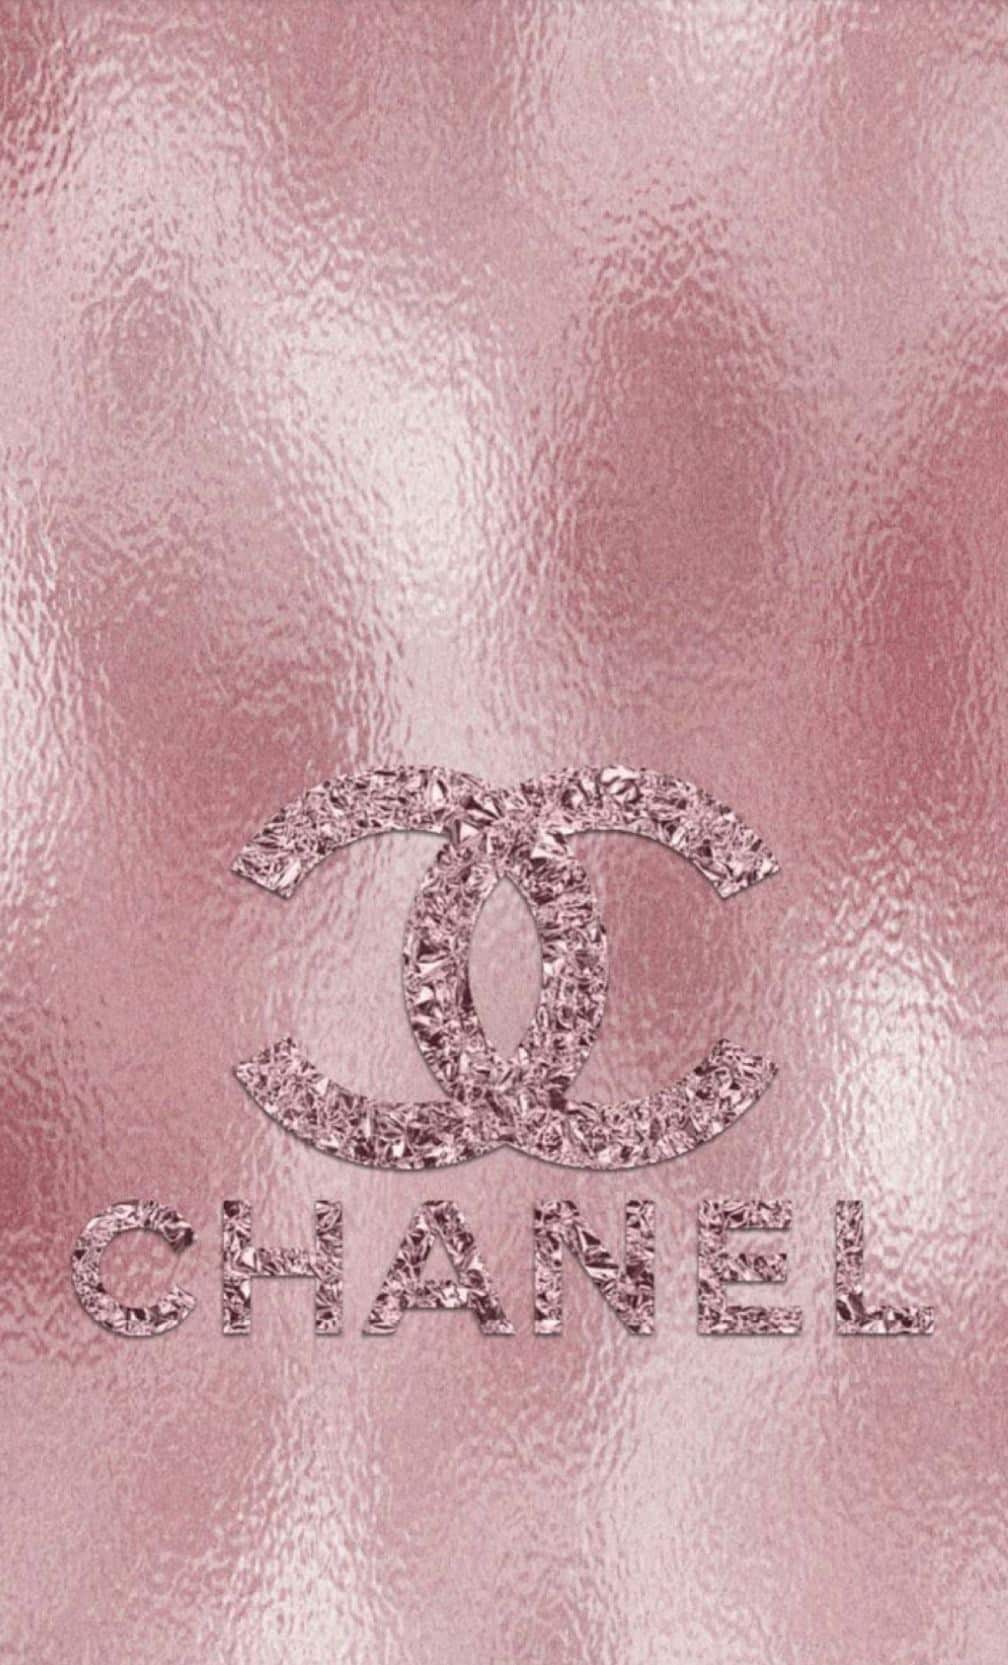 Hình nền Chanel cho iphone